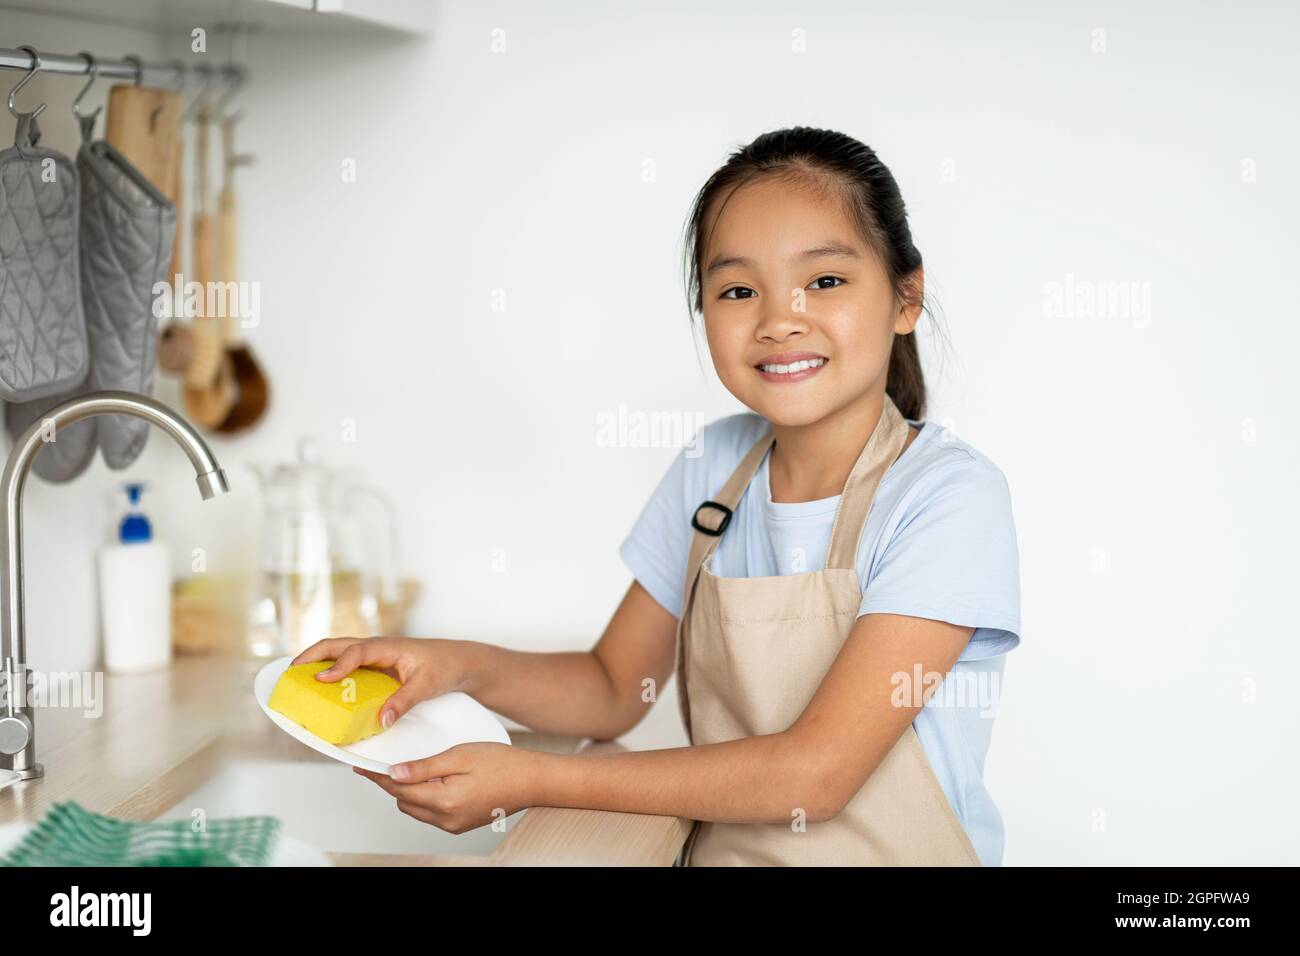 Petite gouvernante. Bonne fille asiatique aidant la mère dans la cuisine, laver et essuyer la vaisselle, debout dans la cuisine Banque D'Images